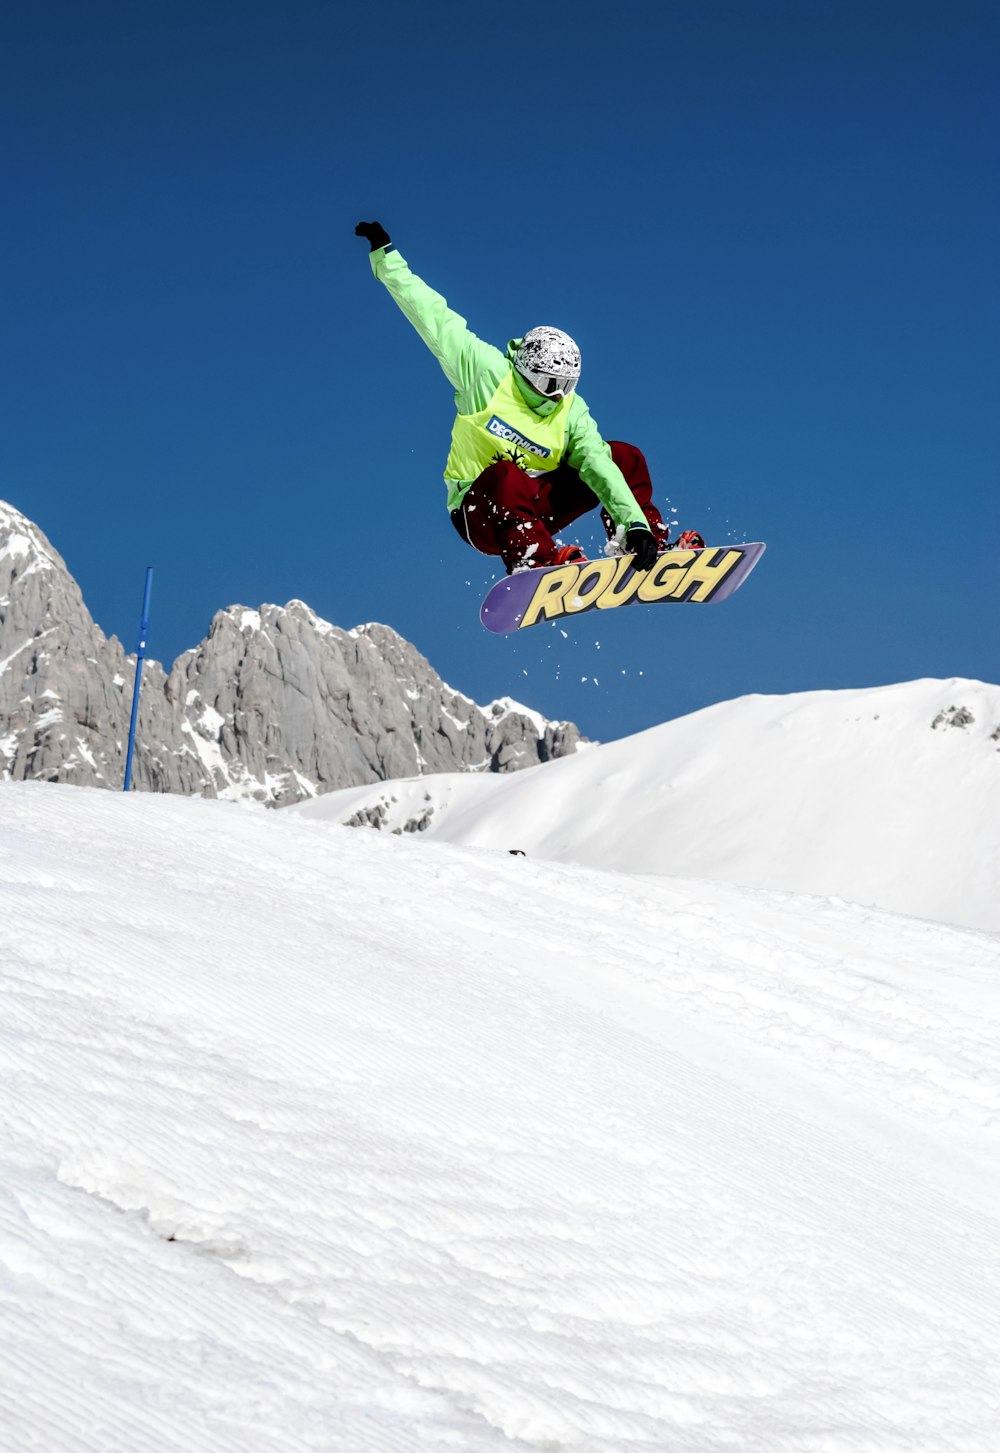 homme en veste verte faisant du snowboard sur une montagne enneigée pendant la journée